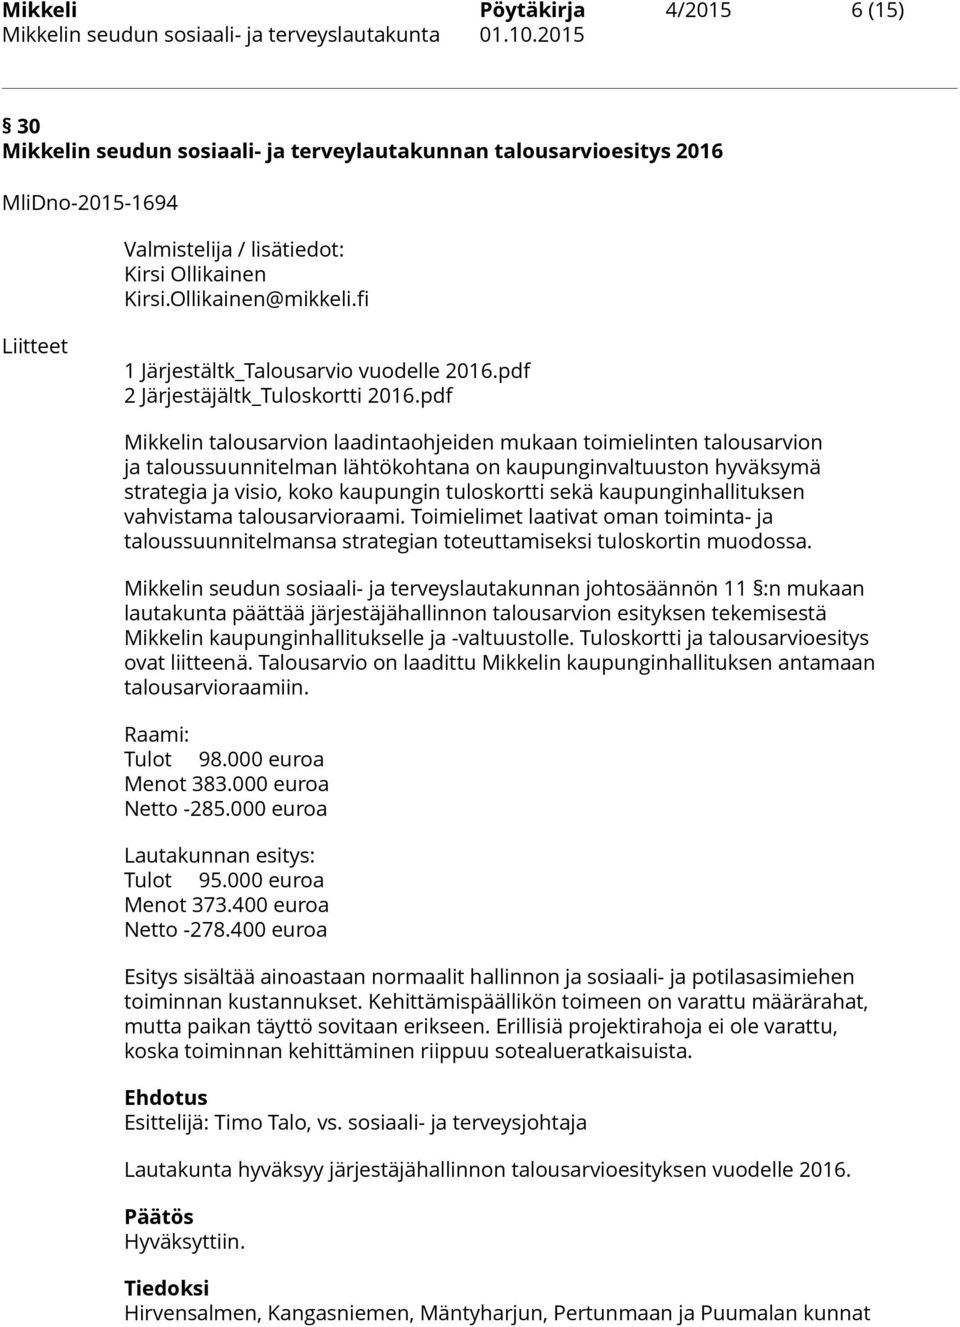 pdf Mikkelin talousarvion laadintaohjeiden mukaan toimielinten talousarvion ja taloussuunnitelman lähtökohtana on kaupunginvaltuuston hyväksymä strategia ja visio, koko kaupungin tuloskortti sekä